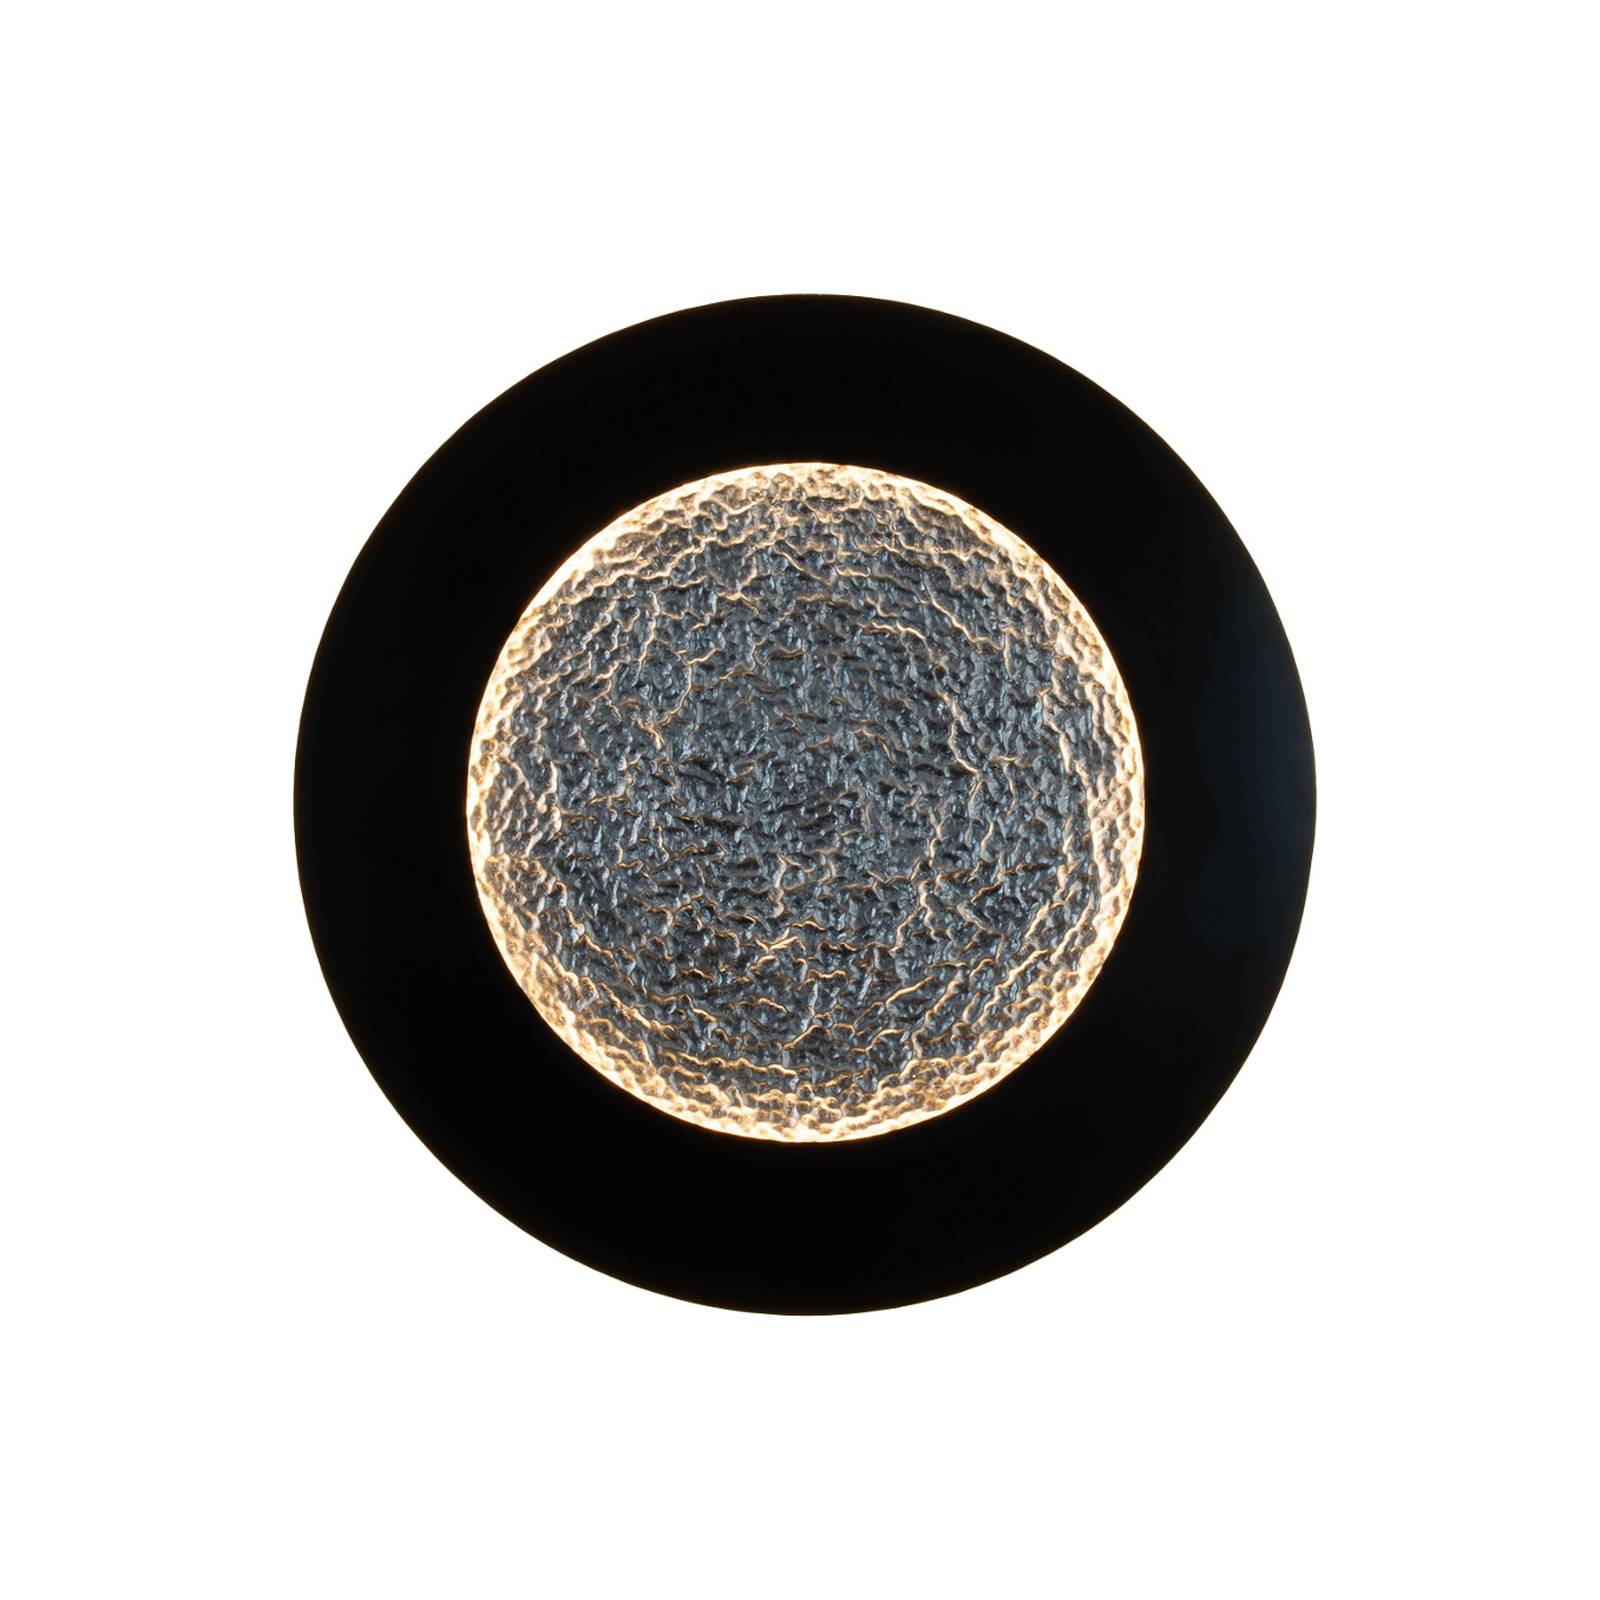 Bild von LED-Wandleuchte Luna Pietra, braun-schwarz/silber, Ø 80 cm